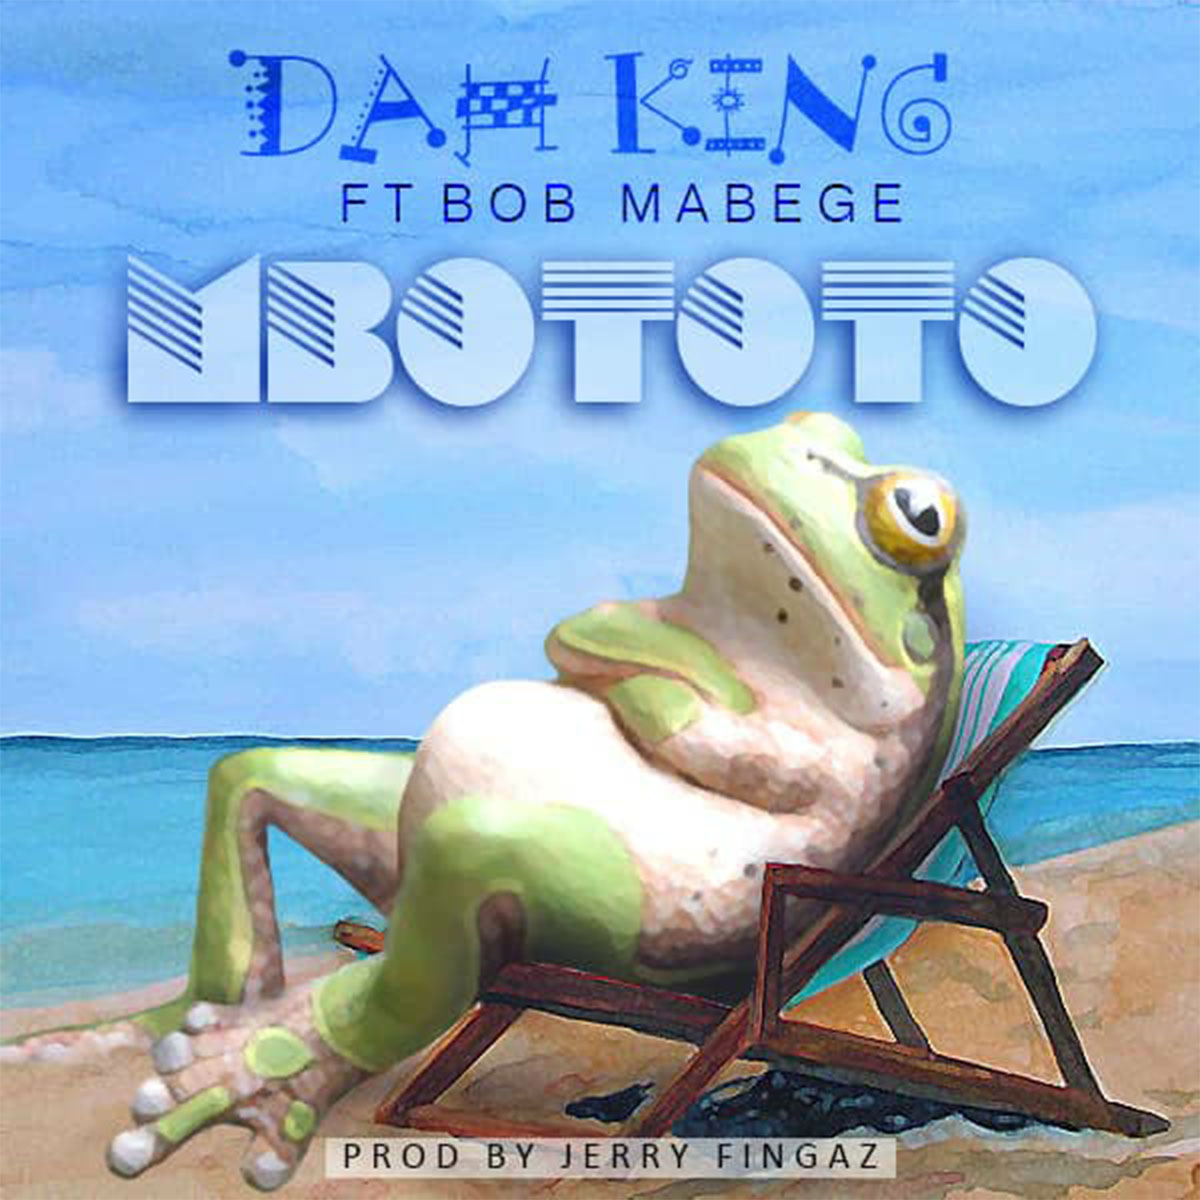 Dah King ft. Bob Mabege - Mbototo